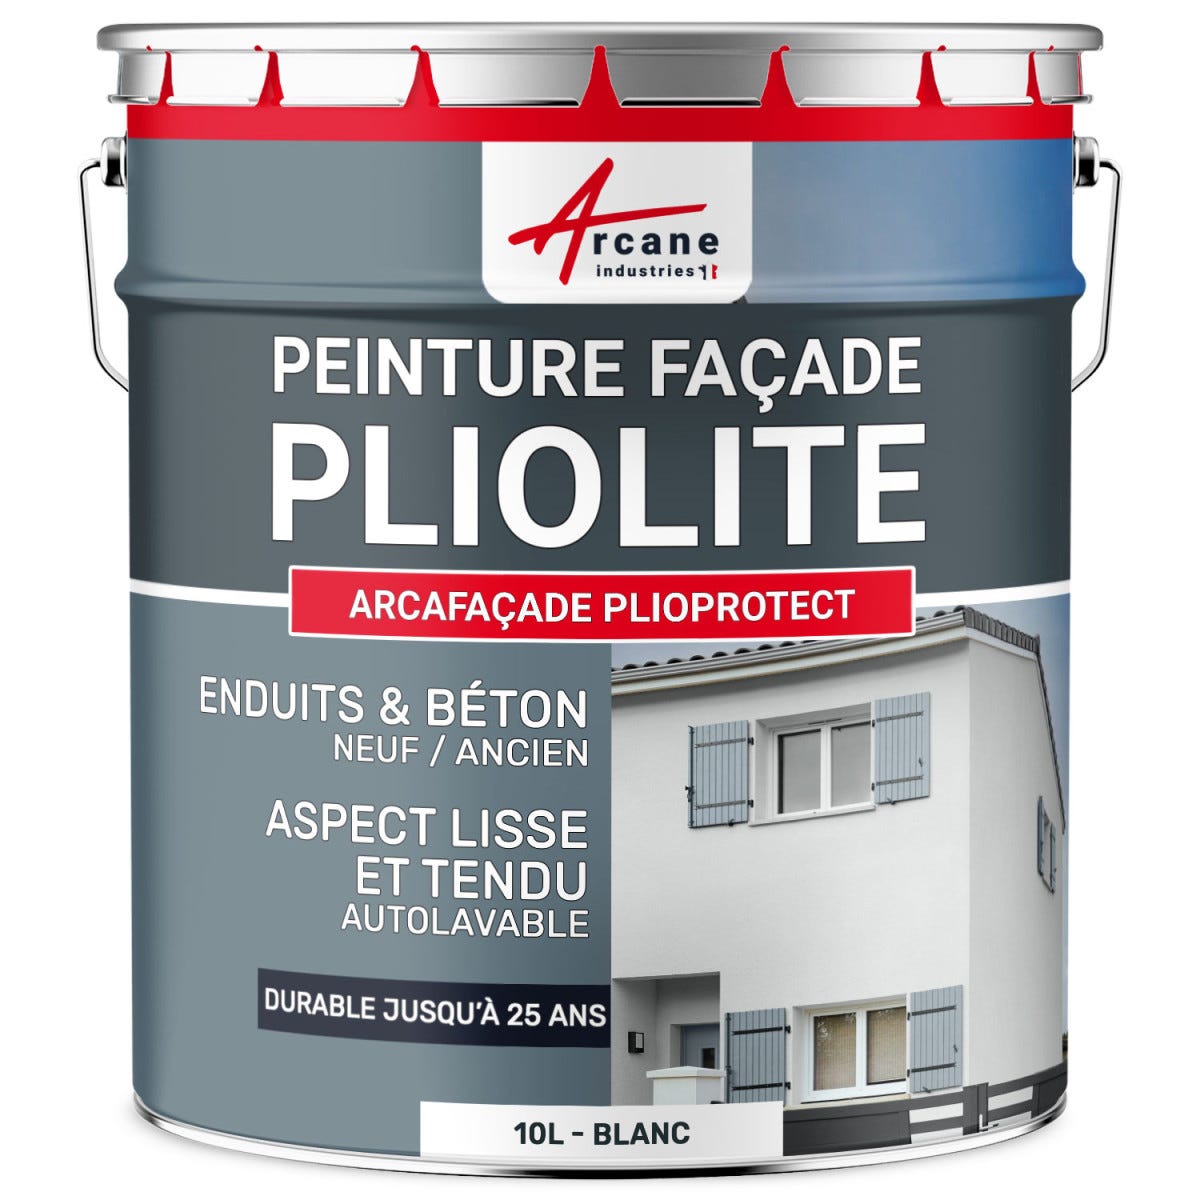 Peinture Façade Solvantée Pliolite - ARCAFACADE PLIOPROTECT - 2.5 L (+ ou - 20 m² en 1 couche) - Pierre - RAL 090 90 10 - ARCANE INDUSTRIES 0